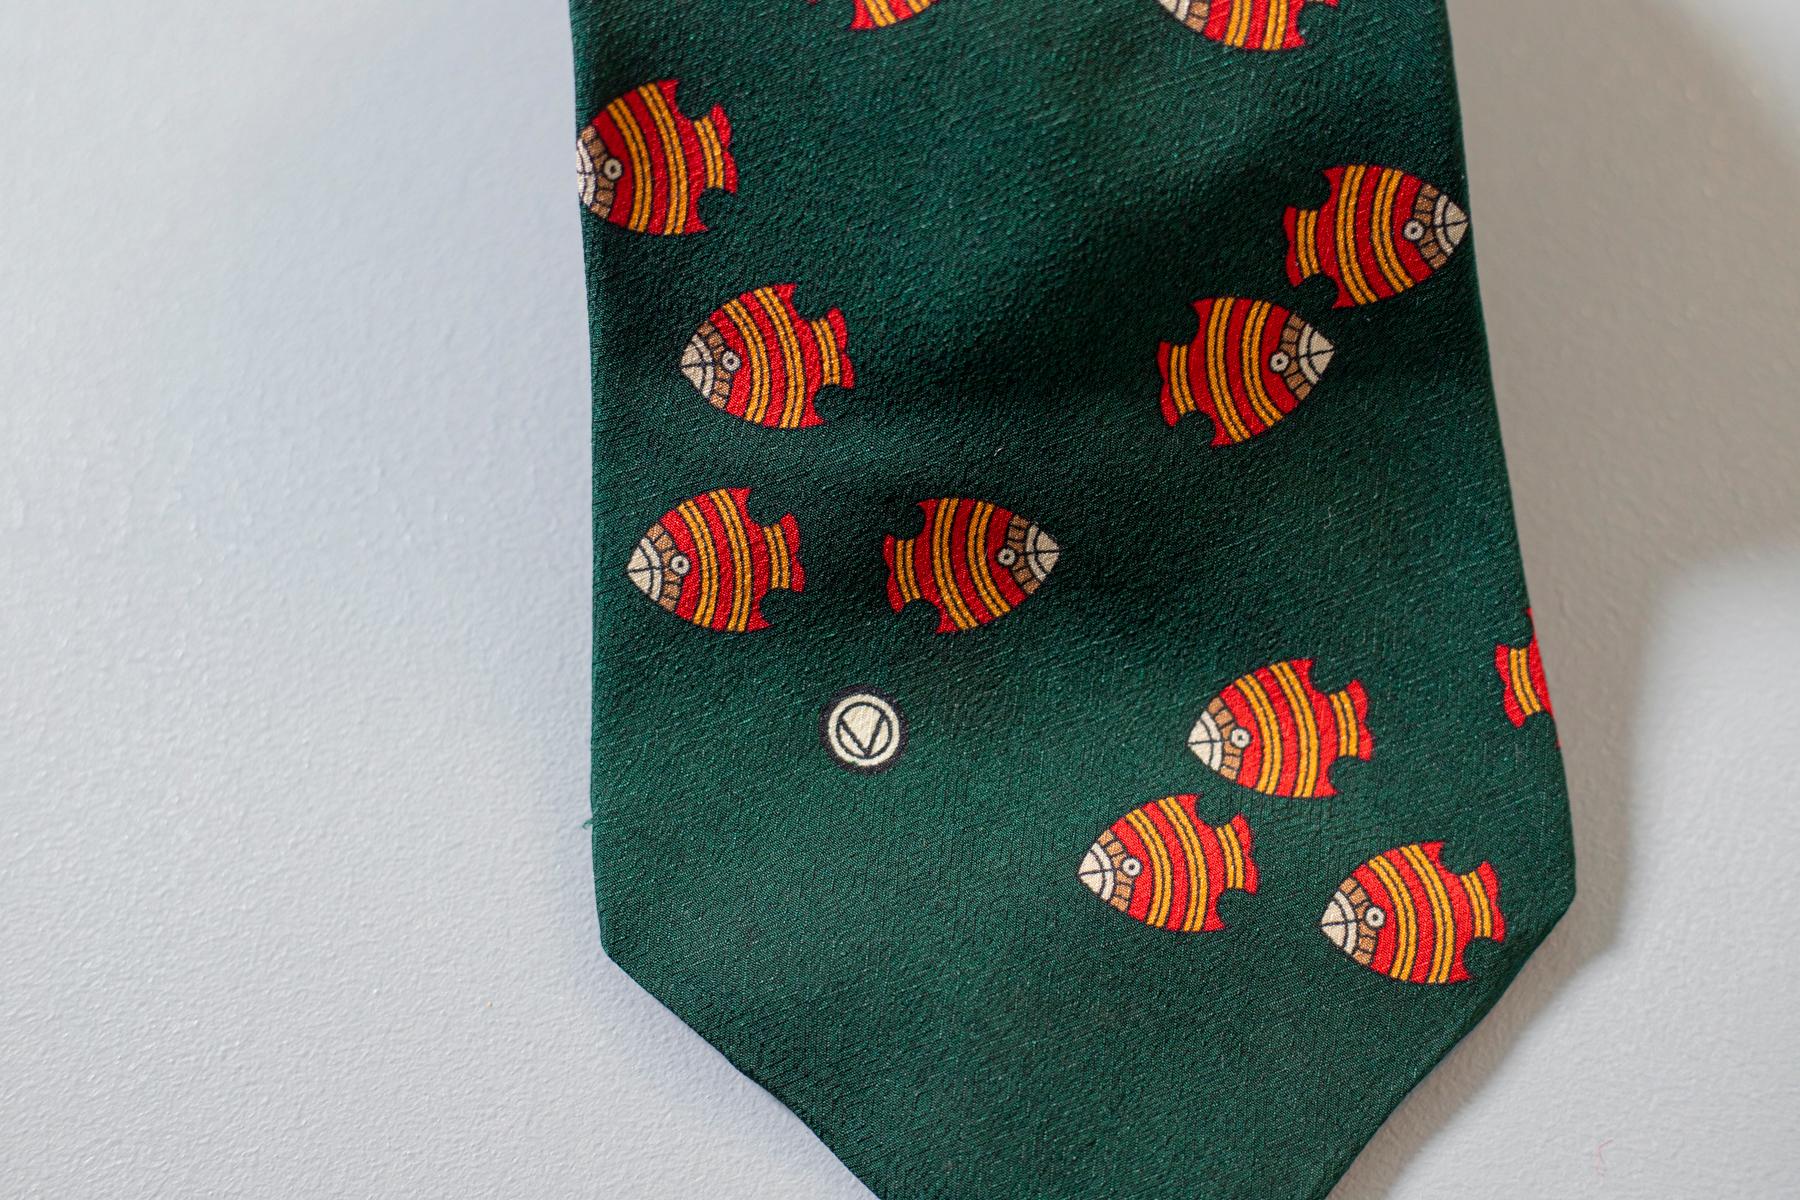 Conçue par Valentino, cette cravate reflète le côté le plus léger de l'Italien. Fabriquée entièrement en soie, cette cravate affiche un groupe de poissons orange nageant sur un fond vert foncé. Ludique et amusante, cette cravate est parfaite pour